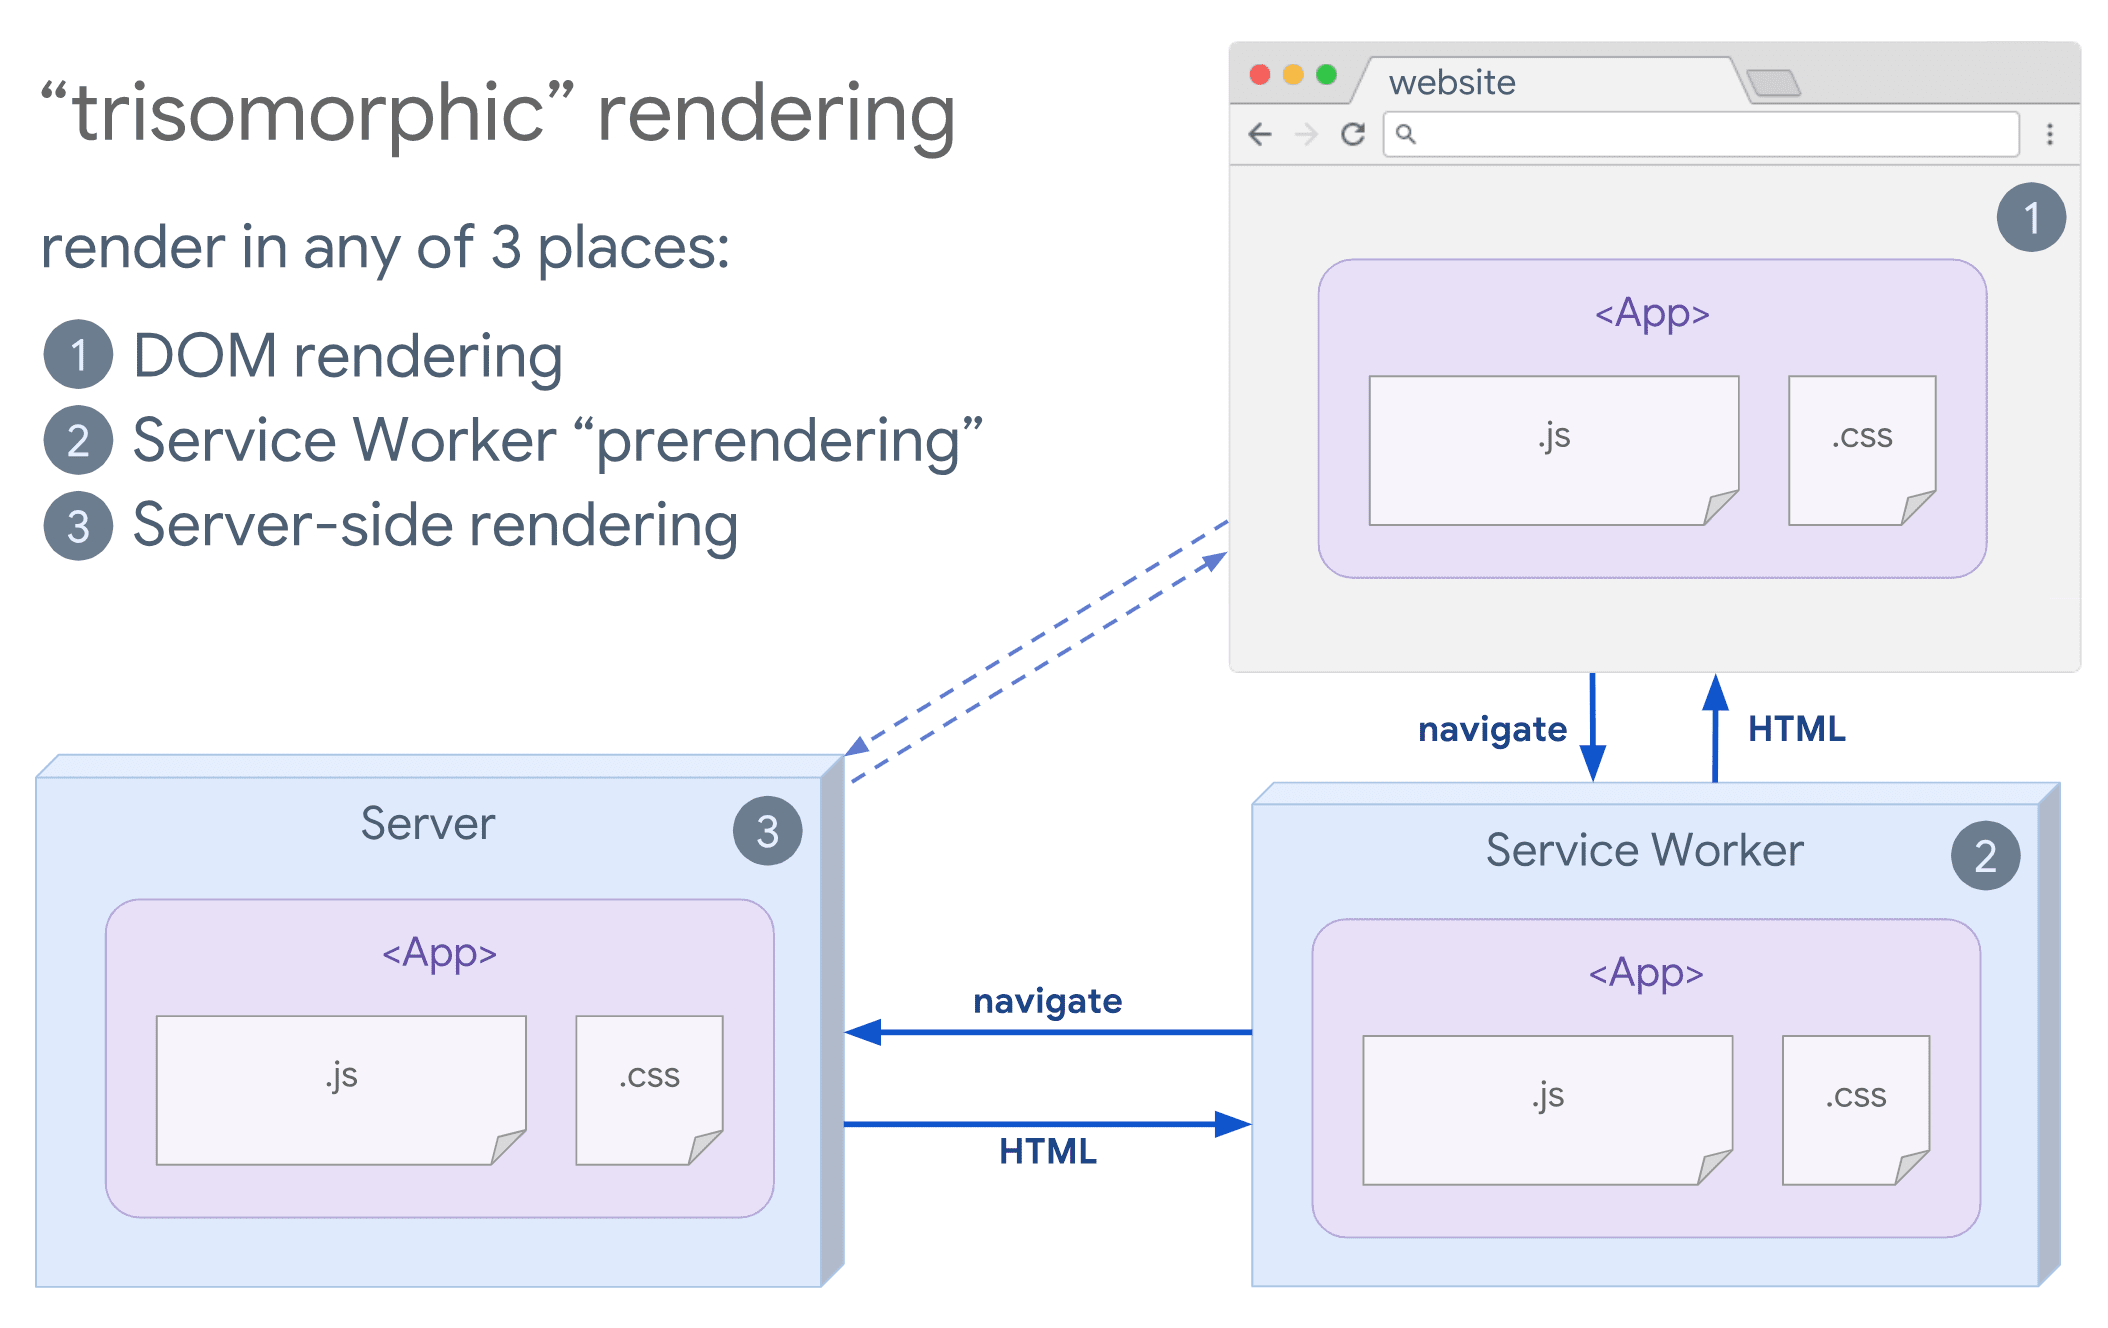 Diagramm des trisomorphen Renderings, das einen Browser und einen Service Worker zeigt, die mit dem Server kommunizieren.